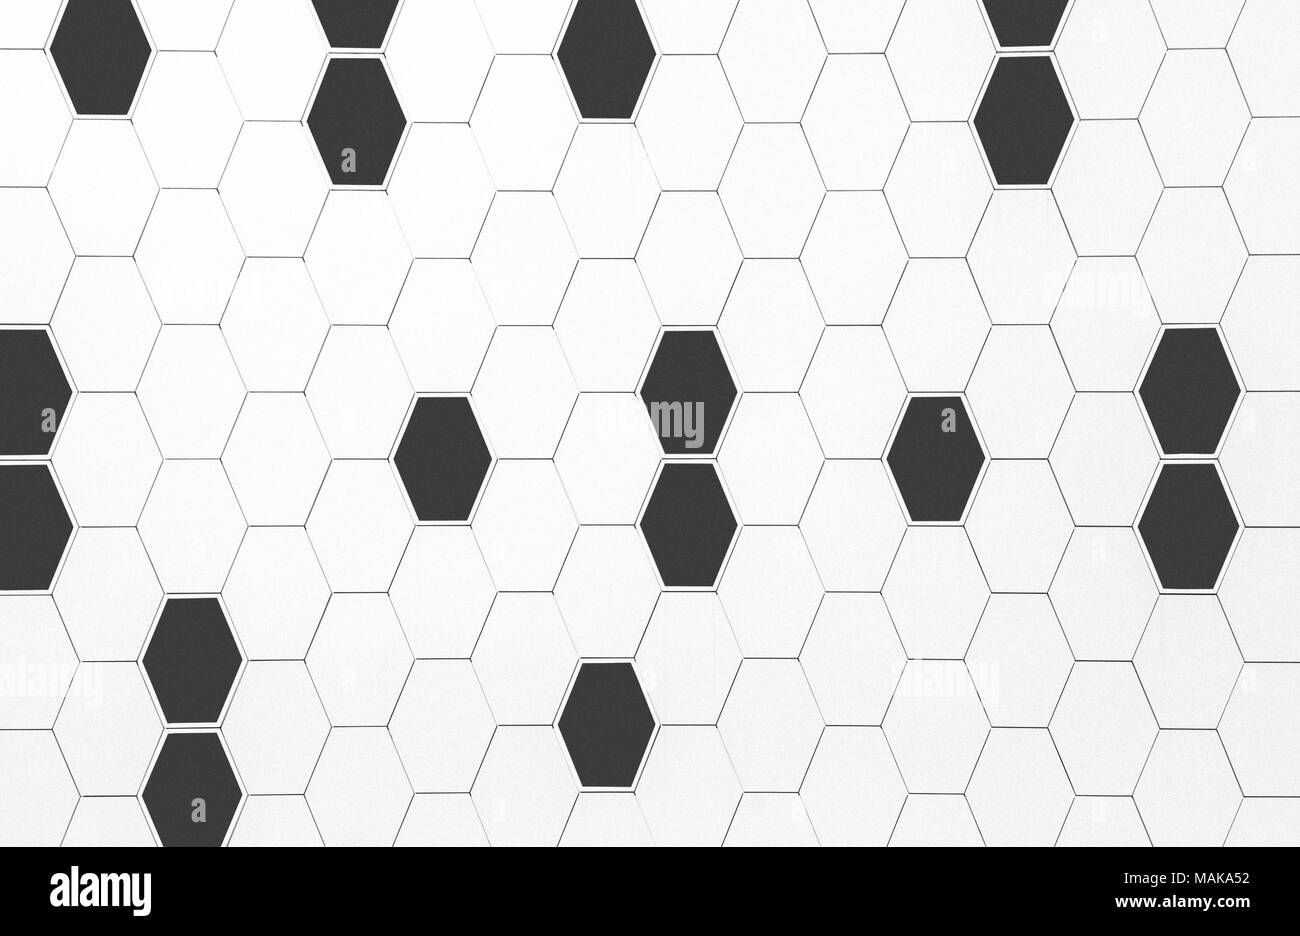 Résumé d'architecture texture extérieure mur noir et blanc avec des formes géométriques hexagon Banque D'Images